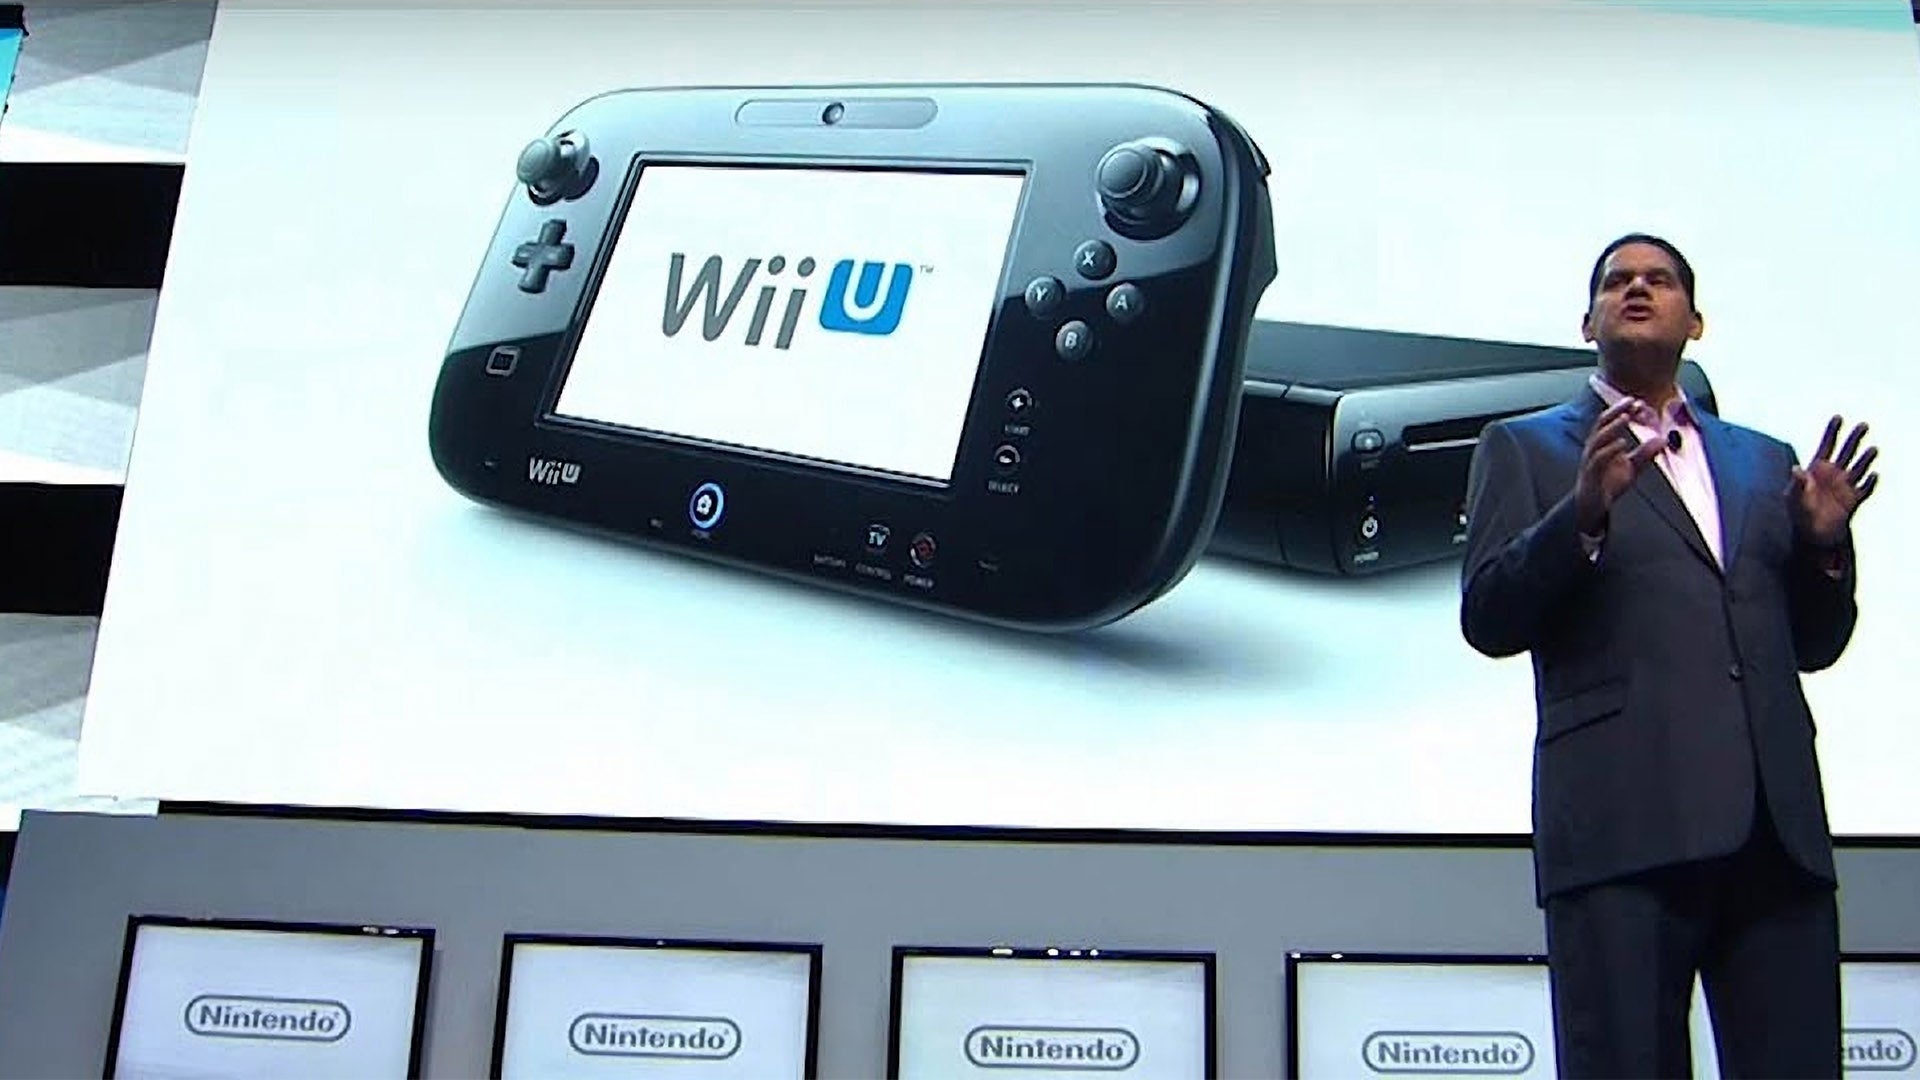 Image for DF Retro EX: Nintendo's Last E3 Press Conference - Wii U at E3 2012